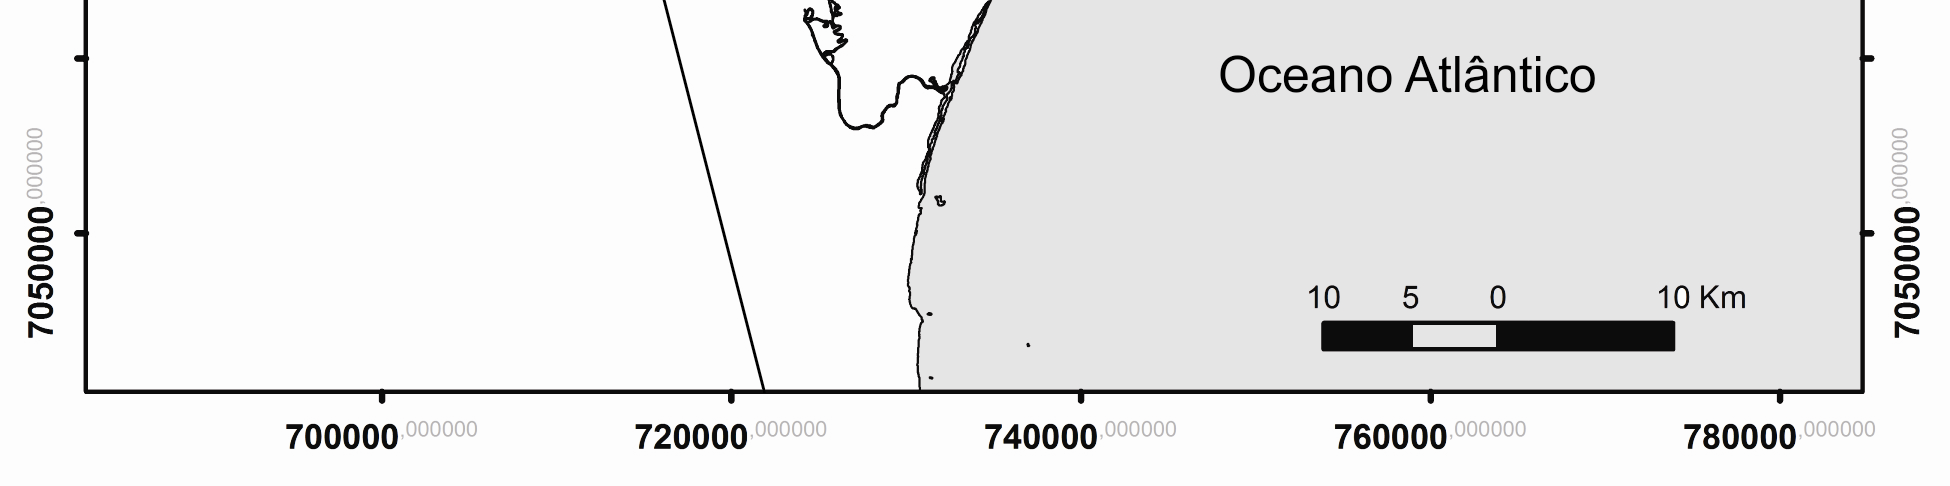 A Baía da Babitonga é contornada em sua porção noroeste pela unidade geomorfológica da Serra do Mar e a sudeste pela Ilha de São Francisco do Sul (CREMER et al., 2006).